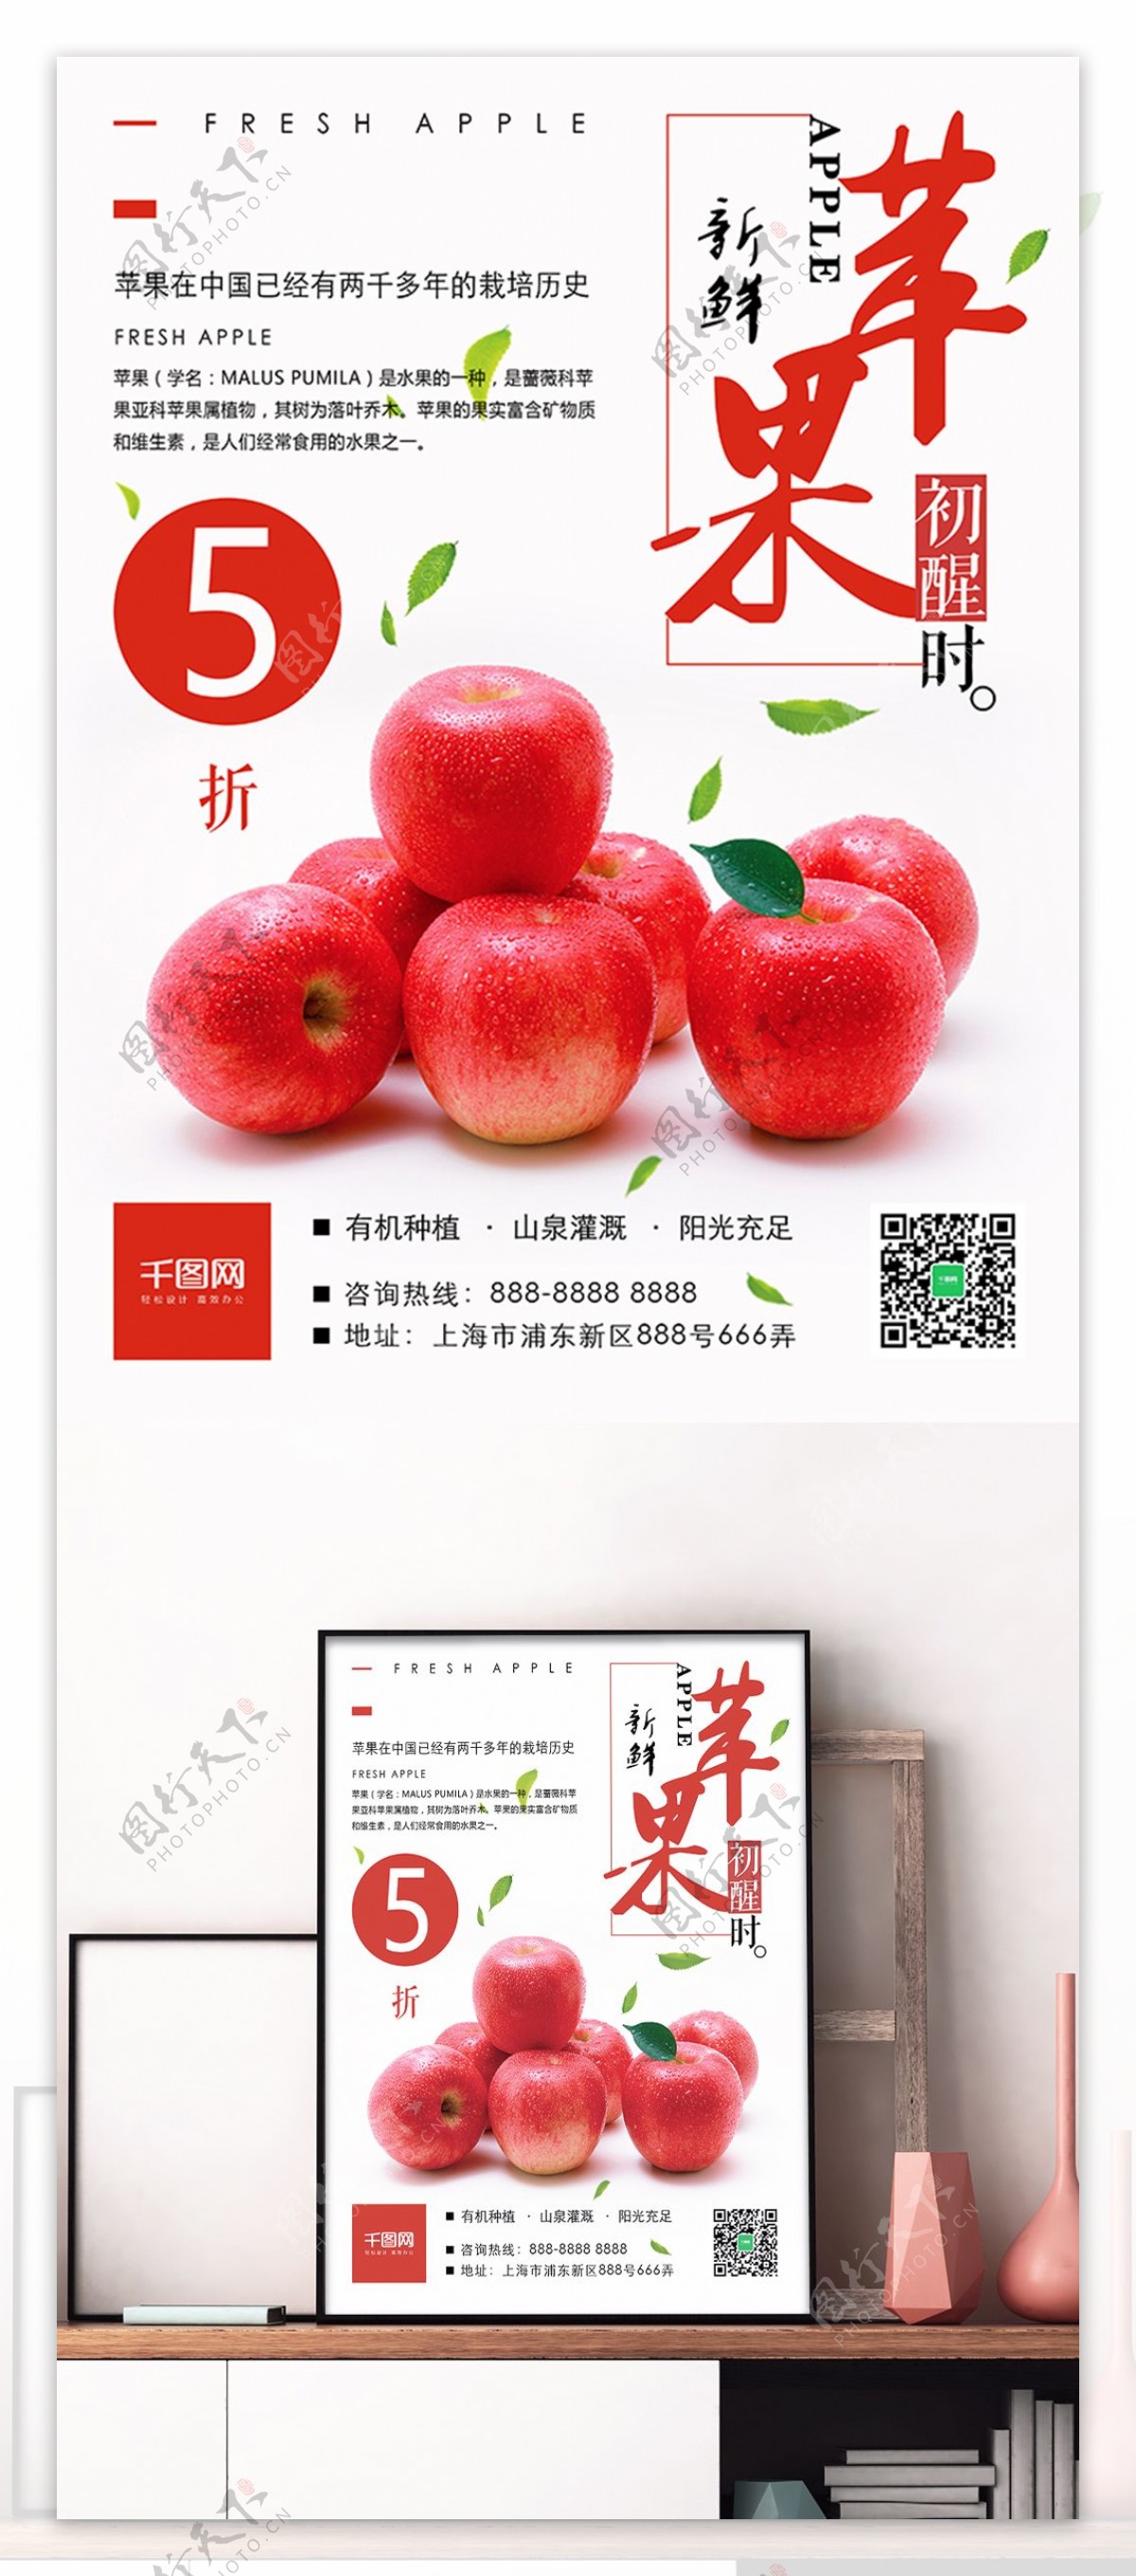 浅灰色清新简约新鲜水果店新鲜苹果美食海报